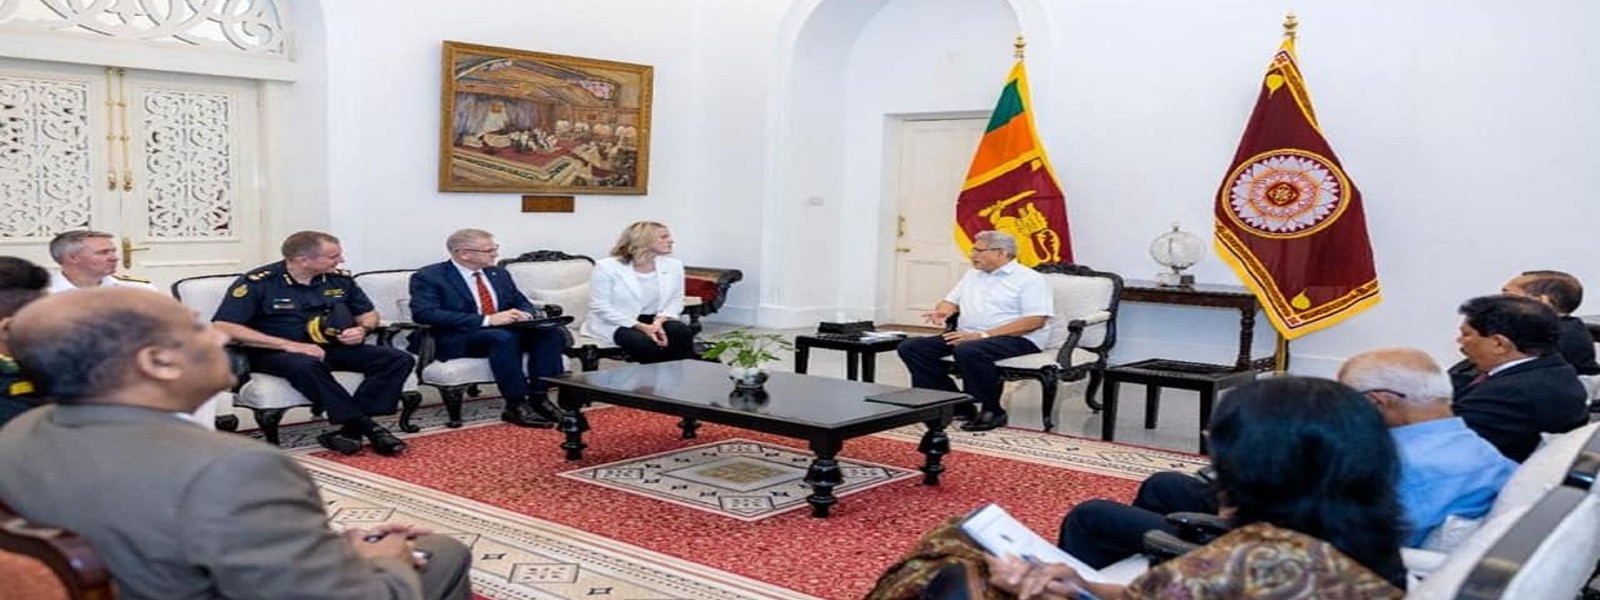 Australia to help Sri Lanka overcome crisis – Home Minister